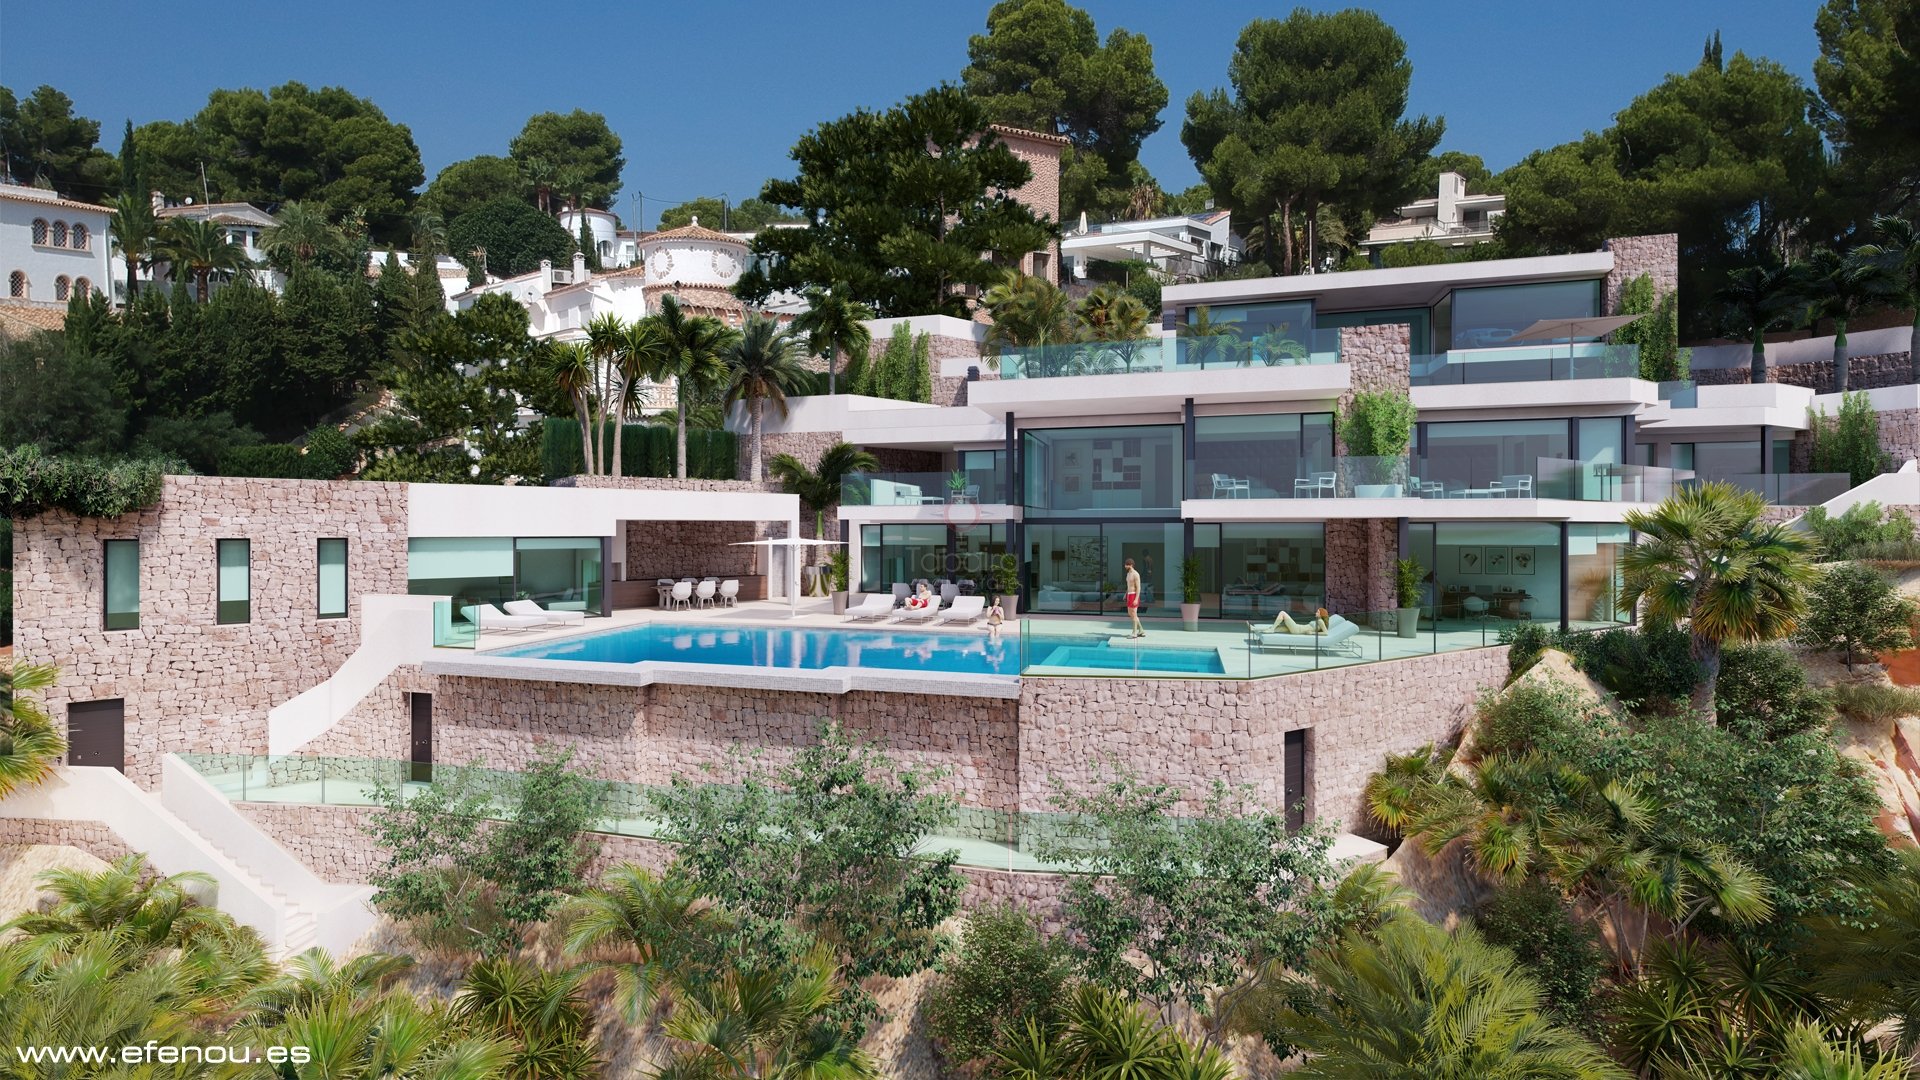 Villa for sale in Moraira, Costa Blanca, Spain 3782580887